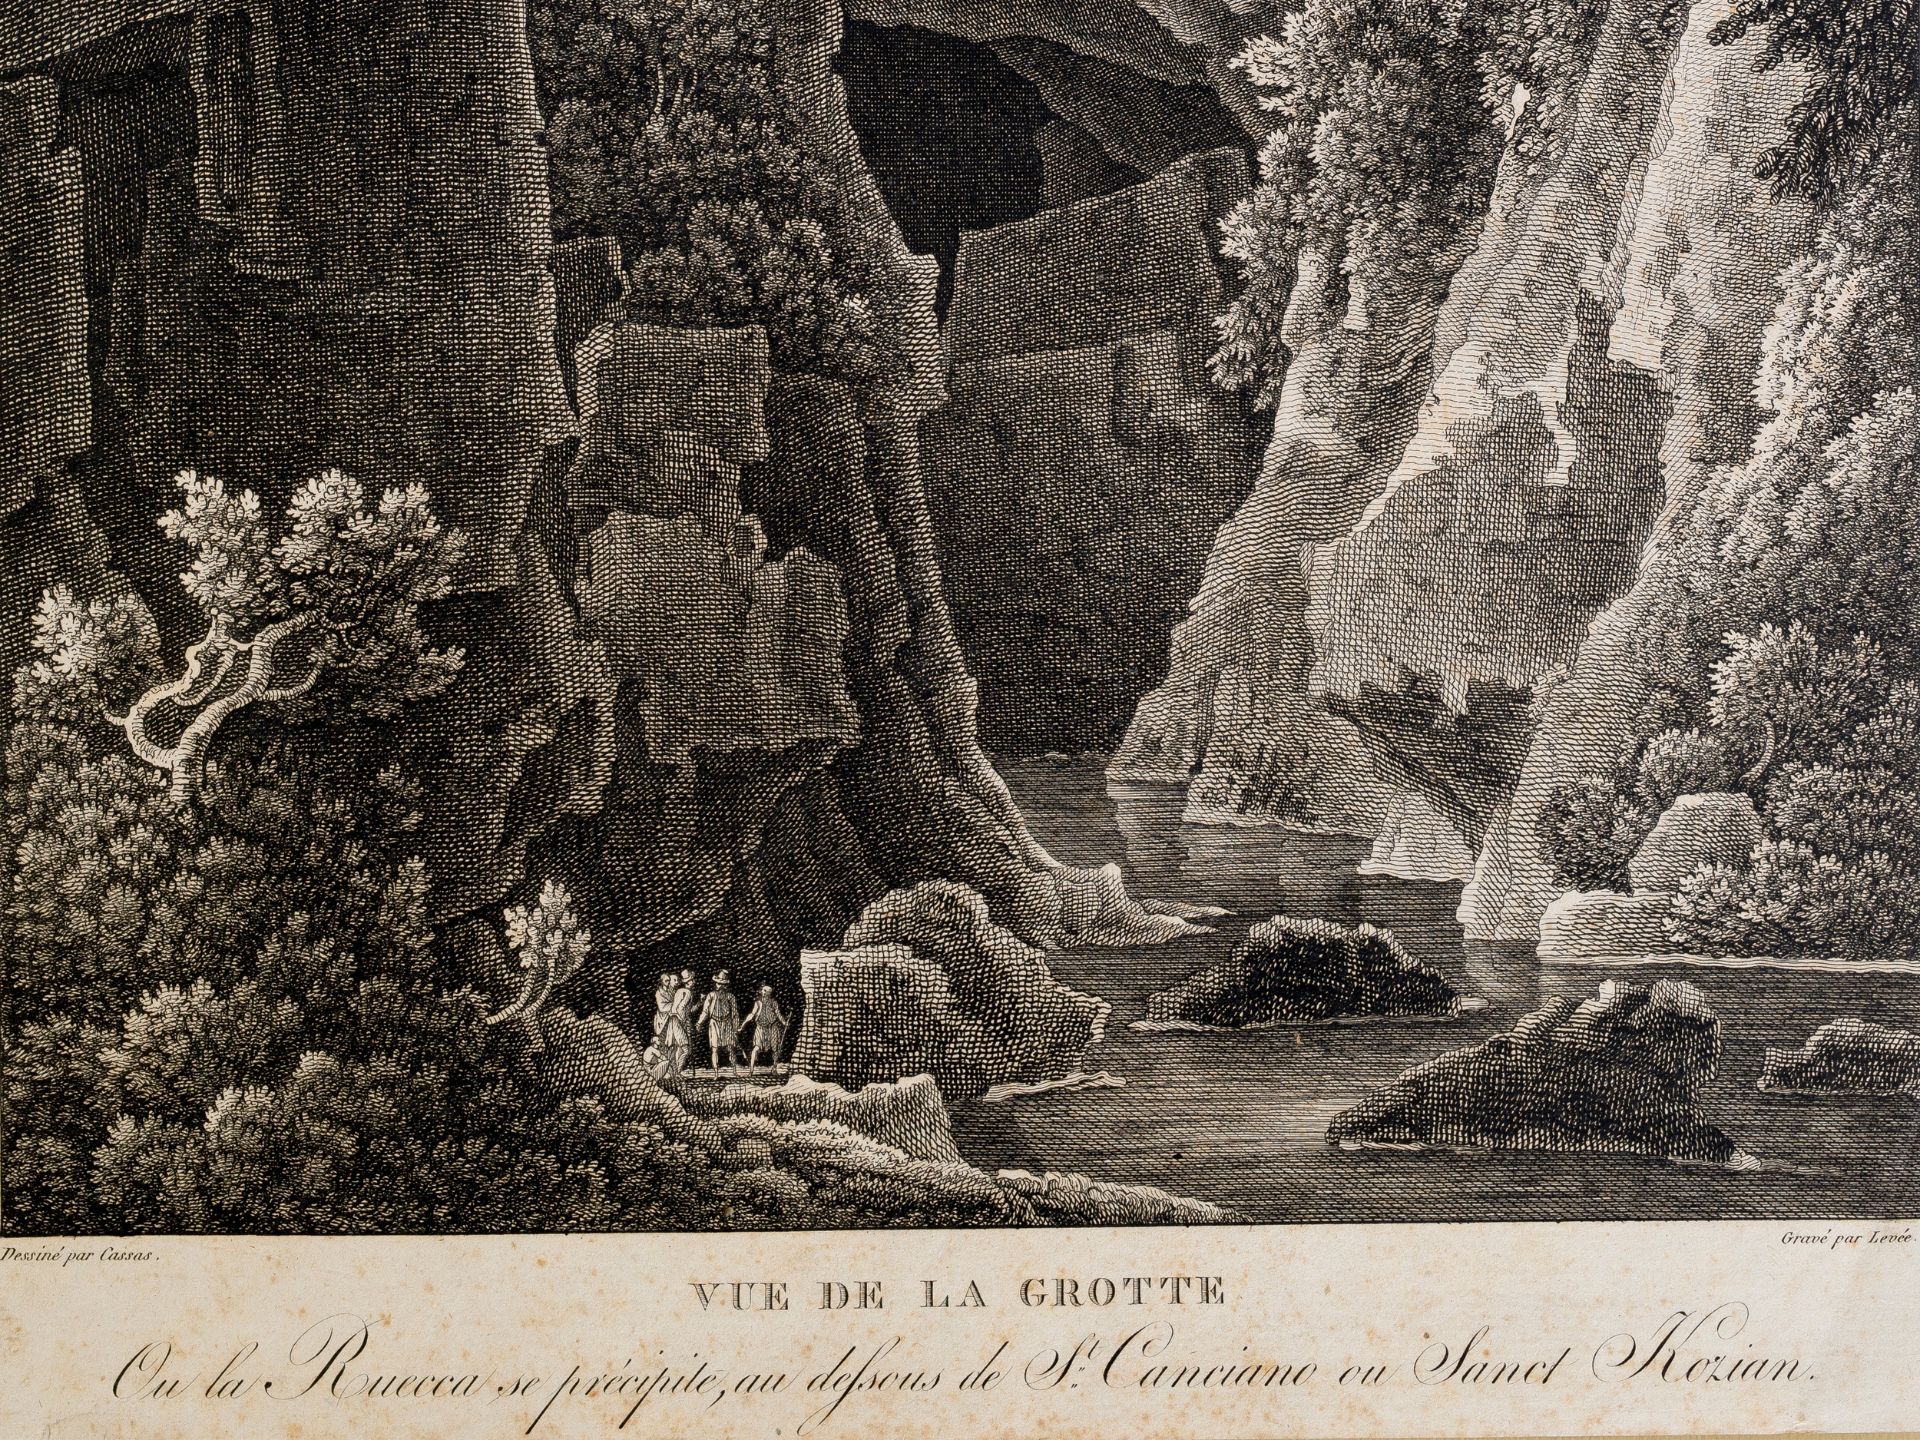 Levée, Follower, "Vue de la grotte" - Image 2 of 2